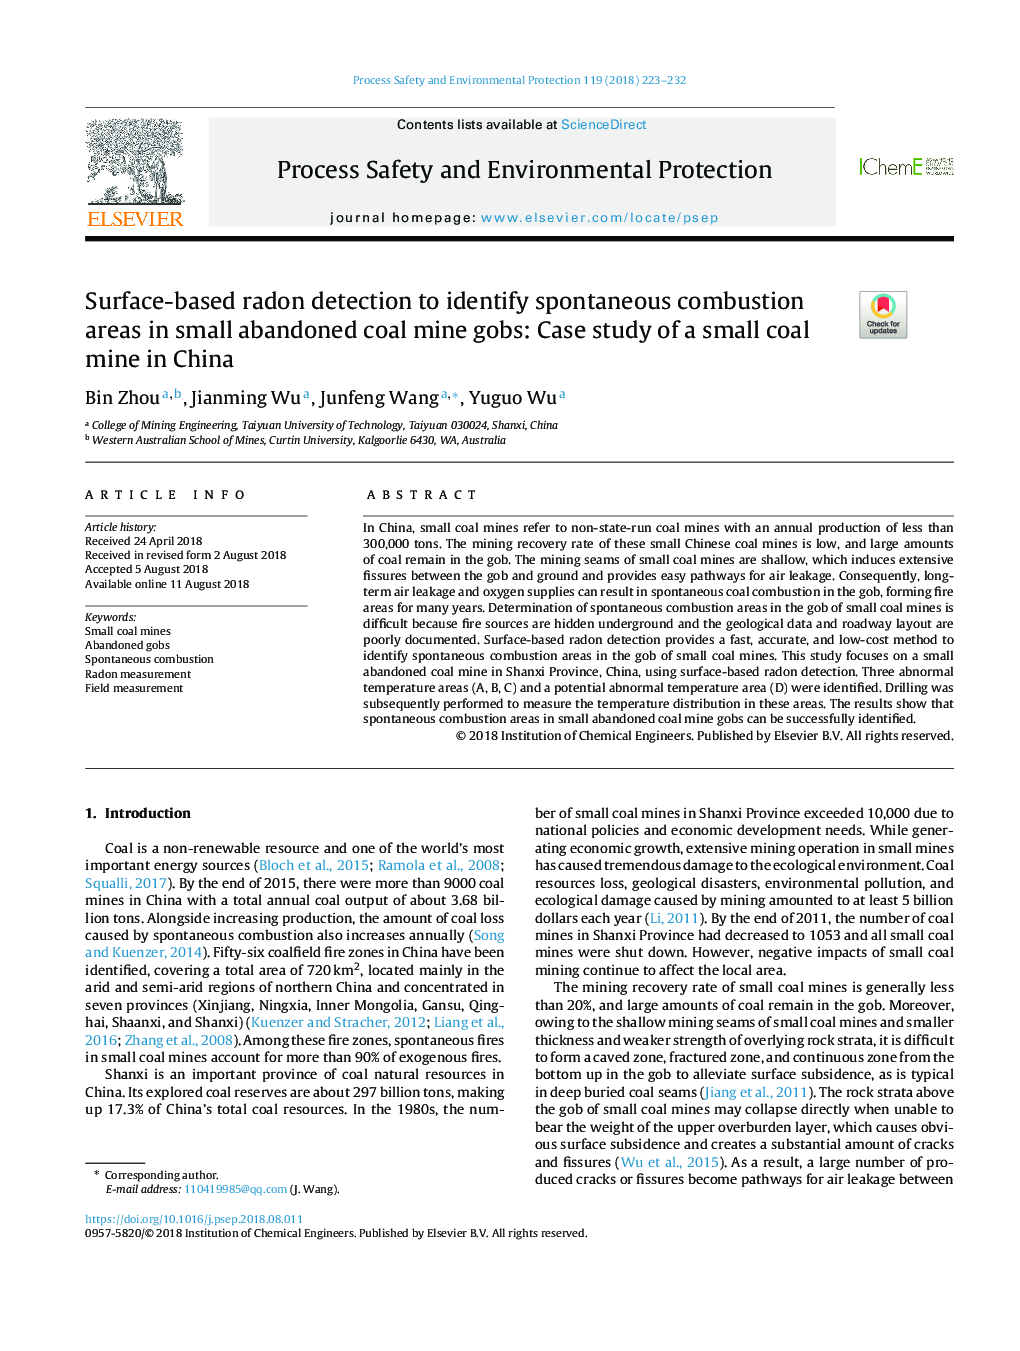 تشخیص رادون مبتنی بر سطح برای شناسایی مناطق احتراق خود به خودی در معادن ذغال سنگ کوچک رها شده: مطالعه موردی از معادن زغال سنگ کوچک در چین